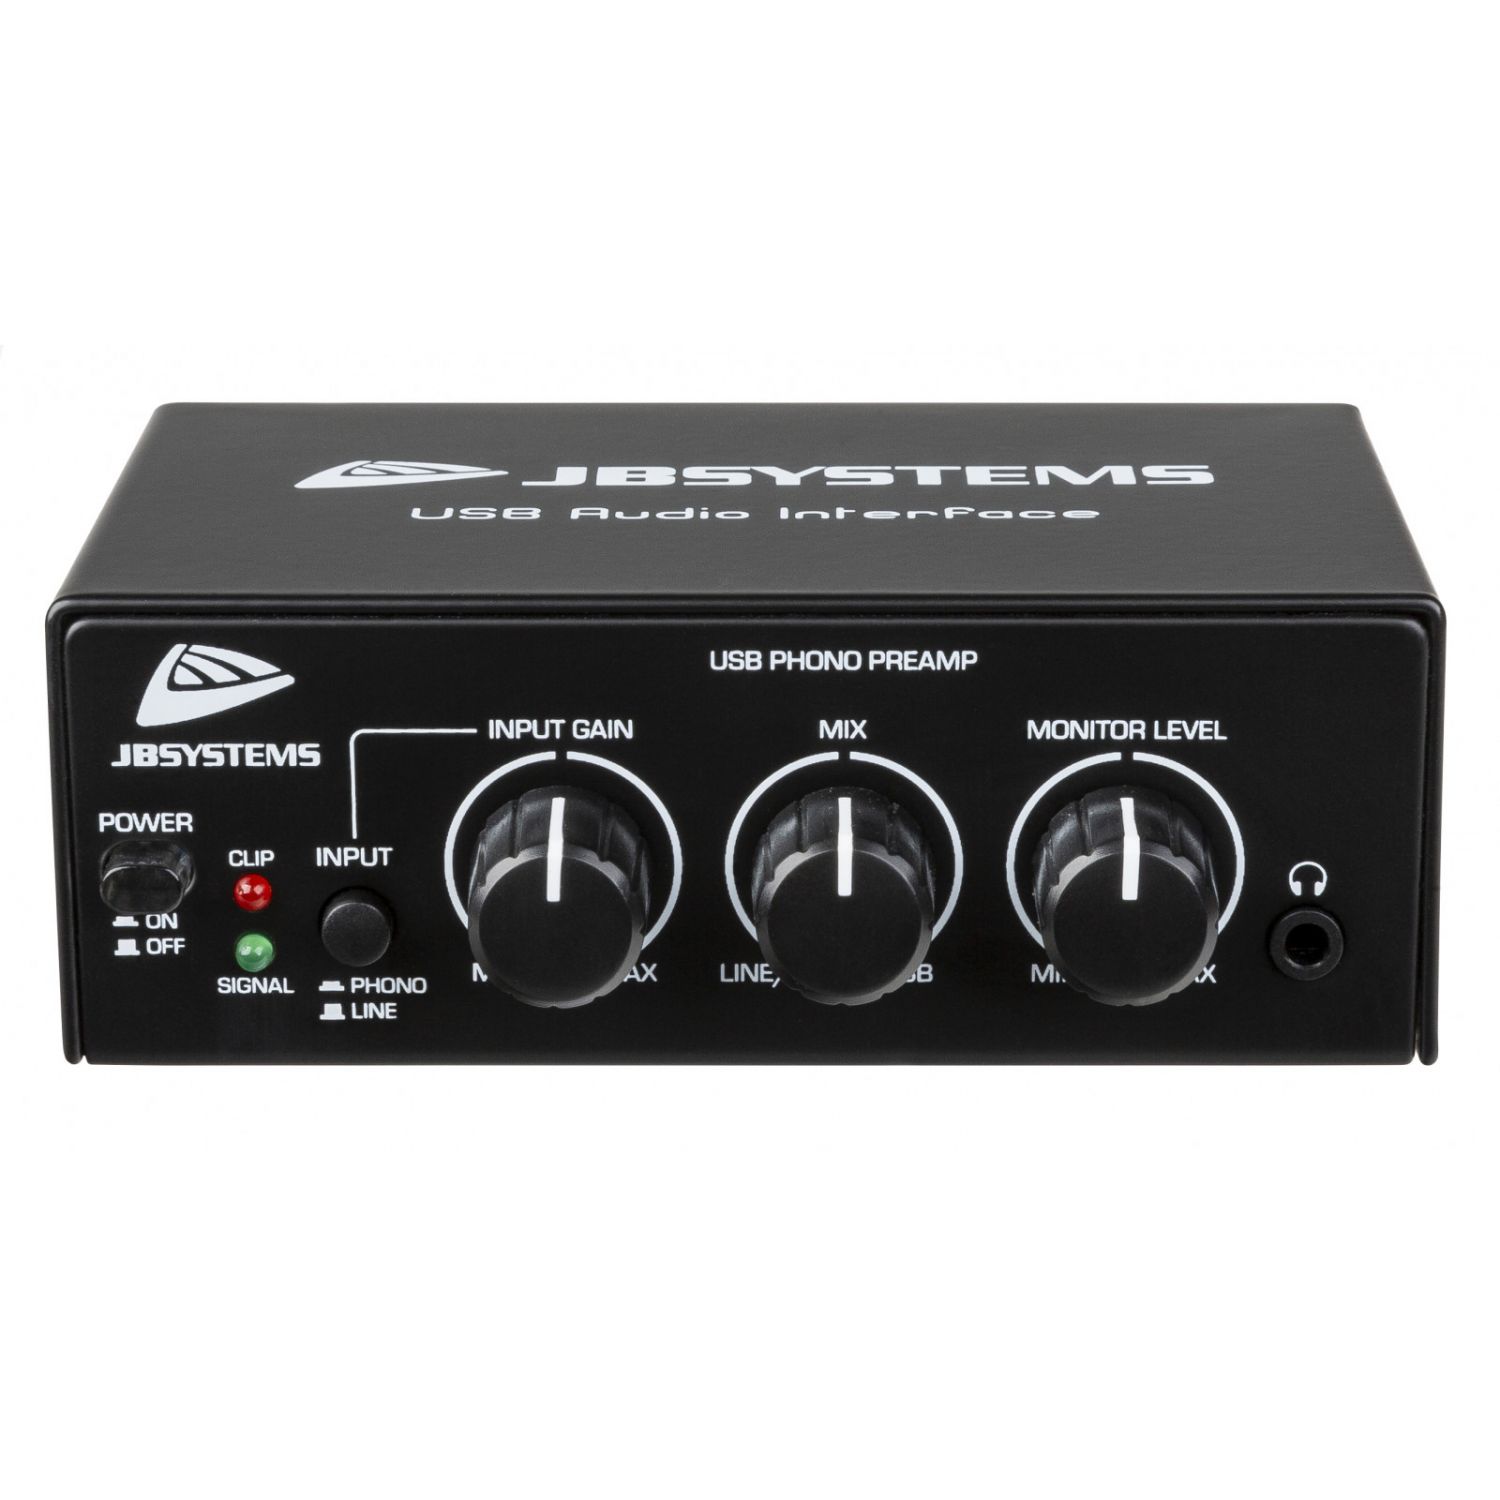 JB Systems USB AUDIO INTERFACE - przedwzmacniacz gramofonowy i liniowy oraz interfejs USB